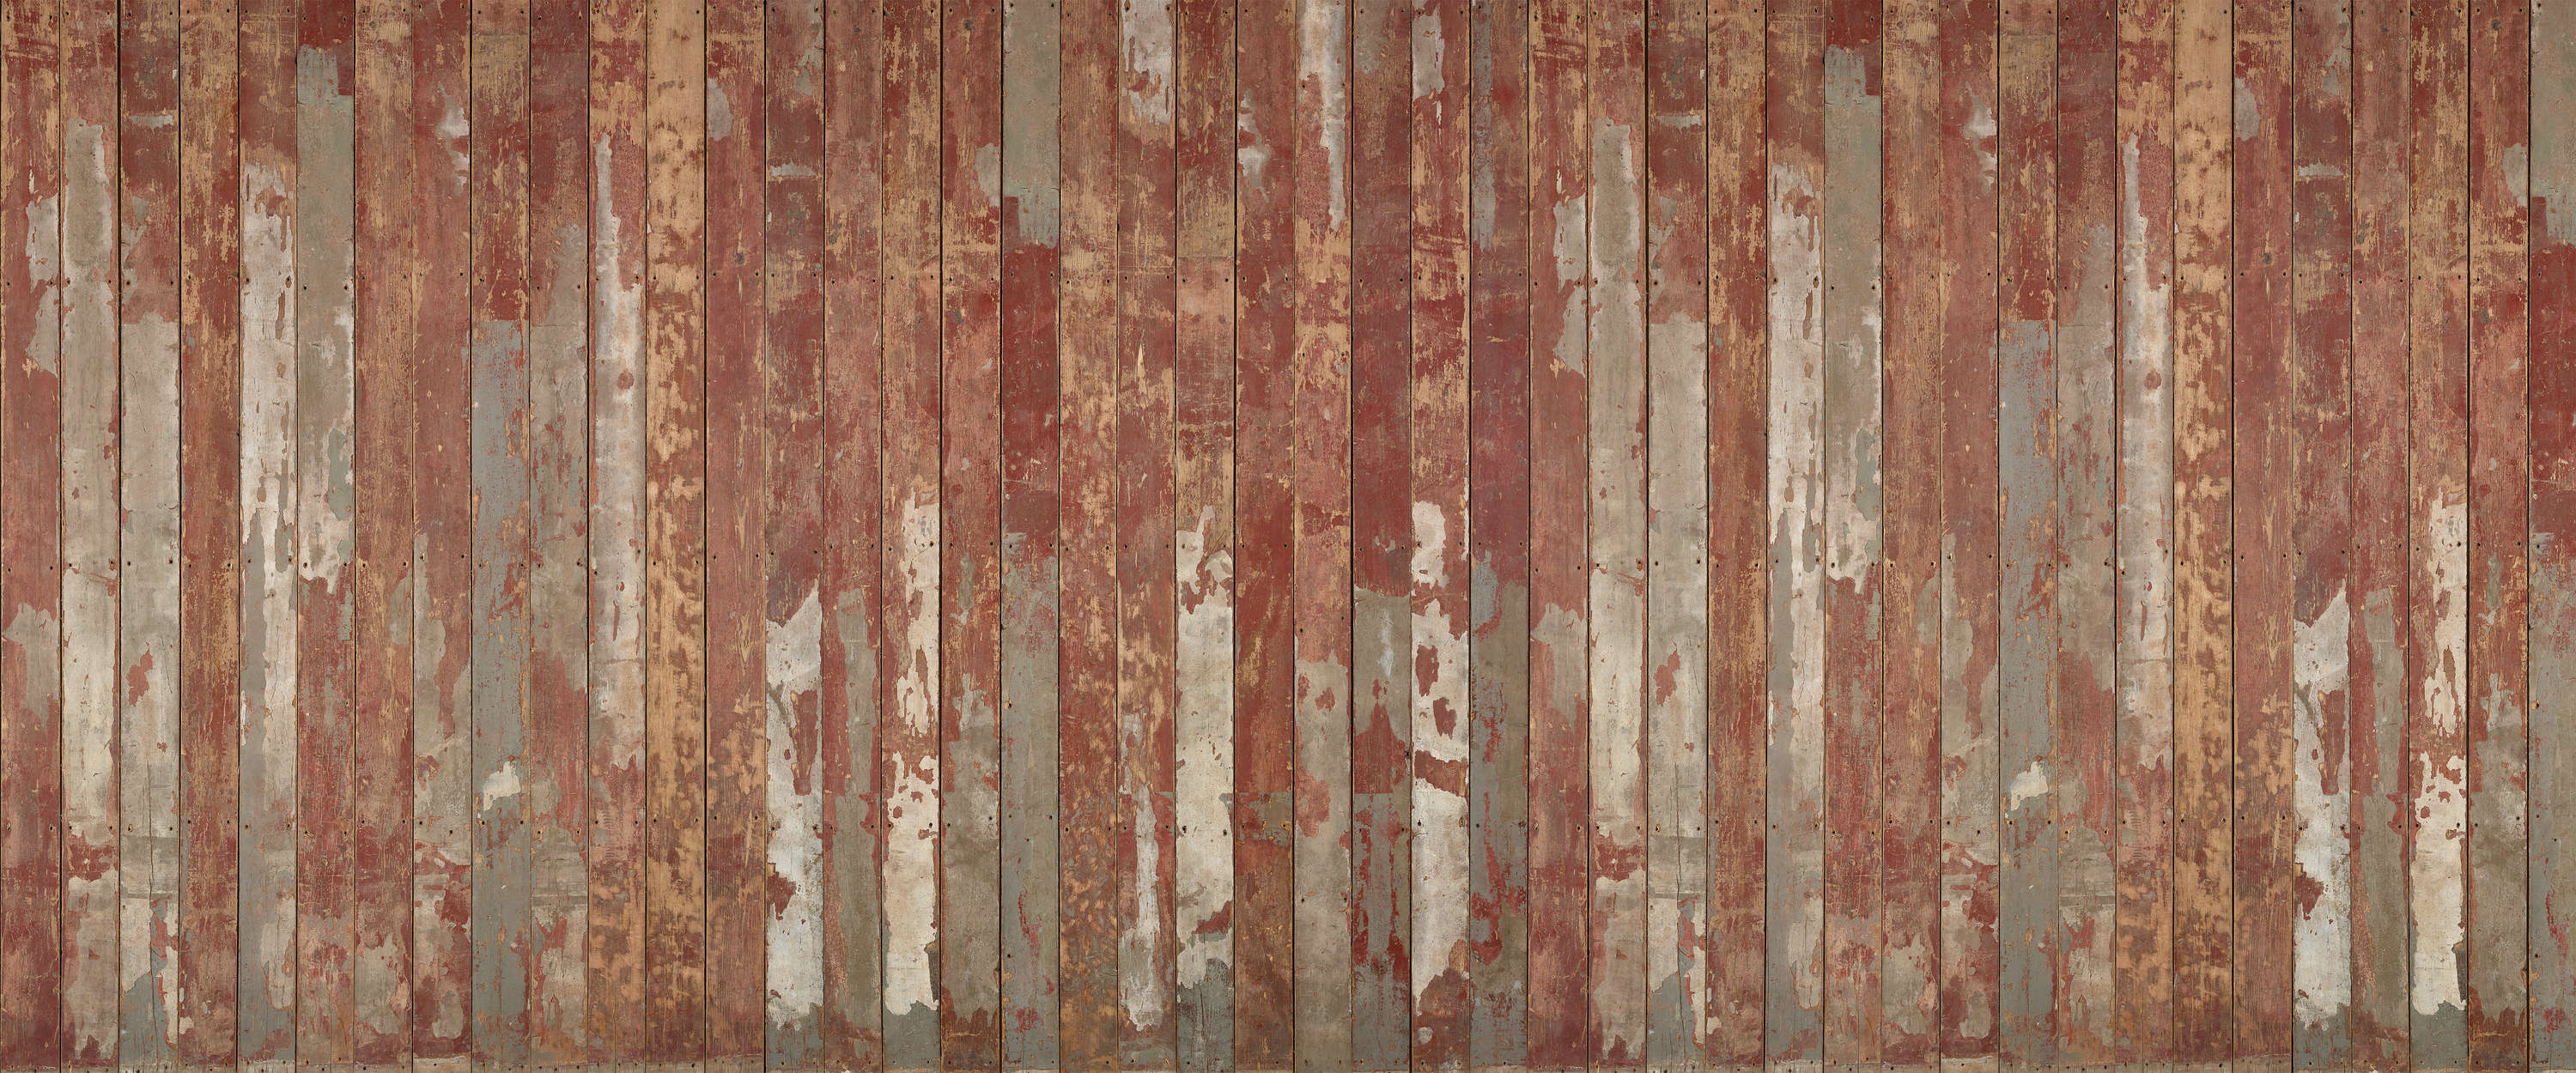 Vinilo estampado para pared Tablones de madera de colores rústico